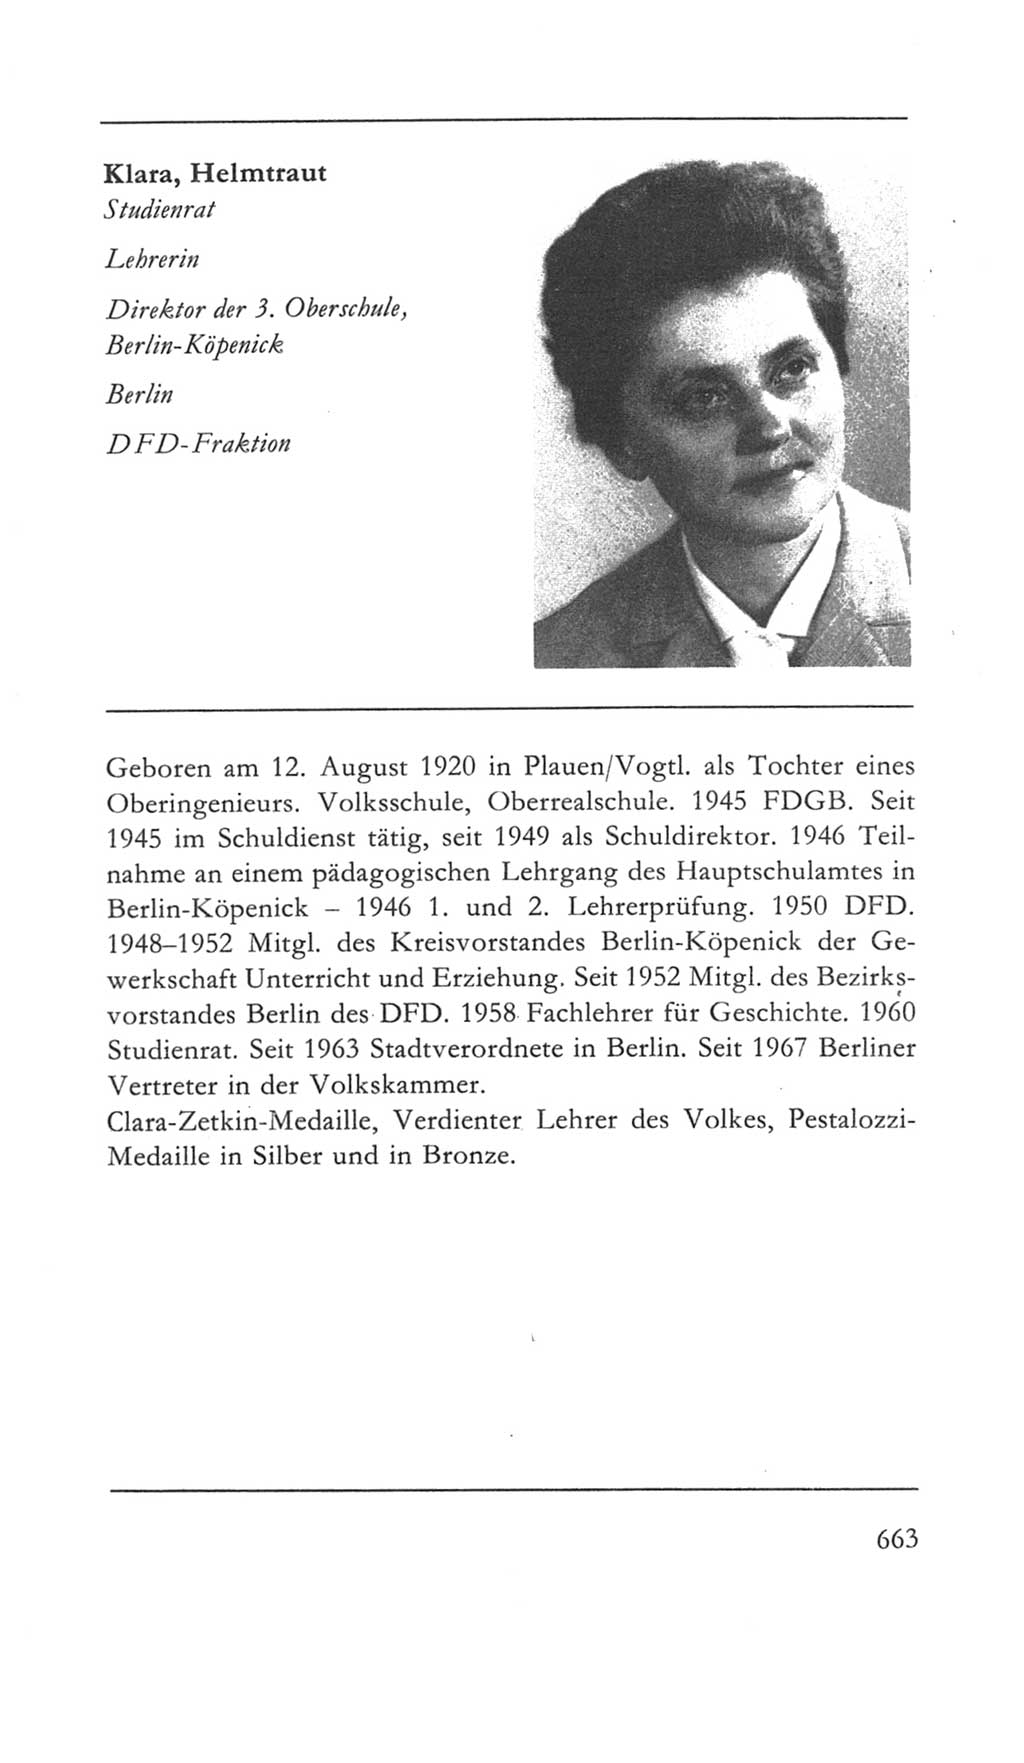 Volkskammer (VK) der Deutschen Demokratischen Republik (DDR) 5. Wahlperiode 1967-1971, Seite 663 (VK. DDR 5. WP. 1967-1971, S. 663)